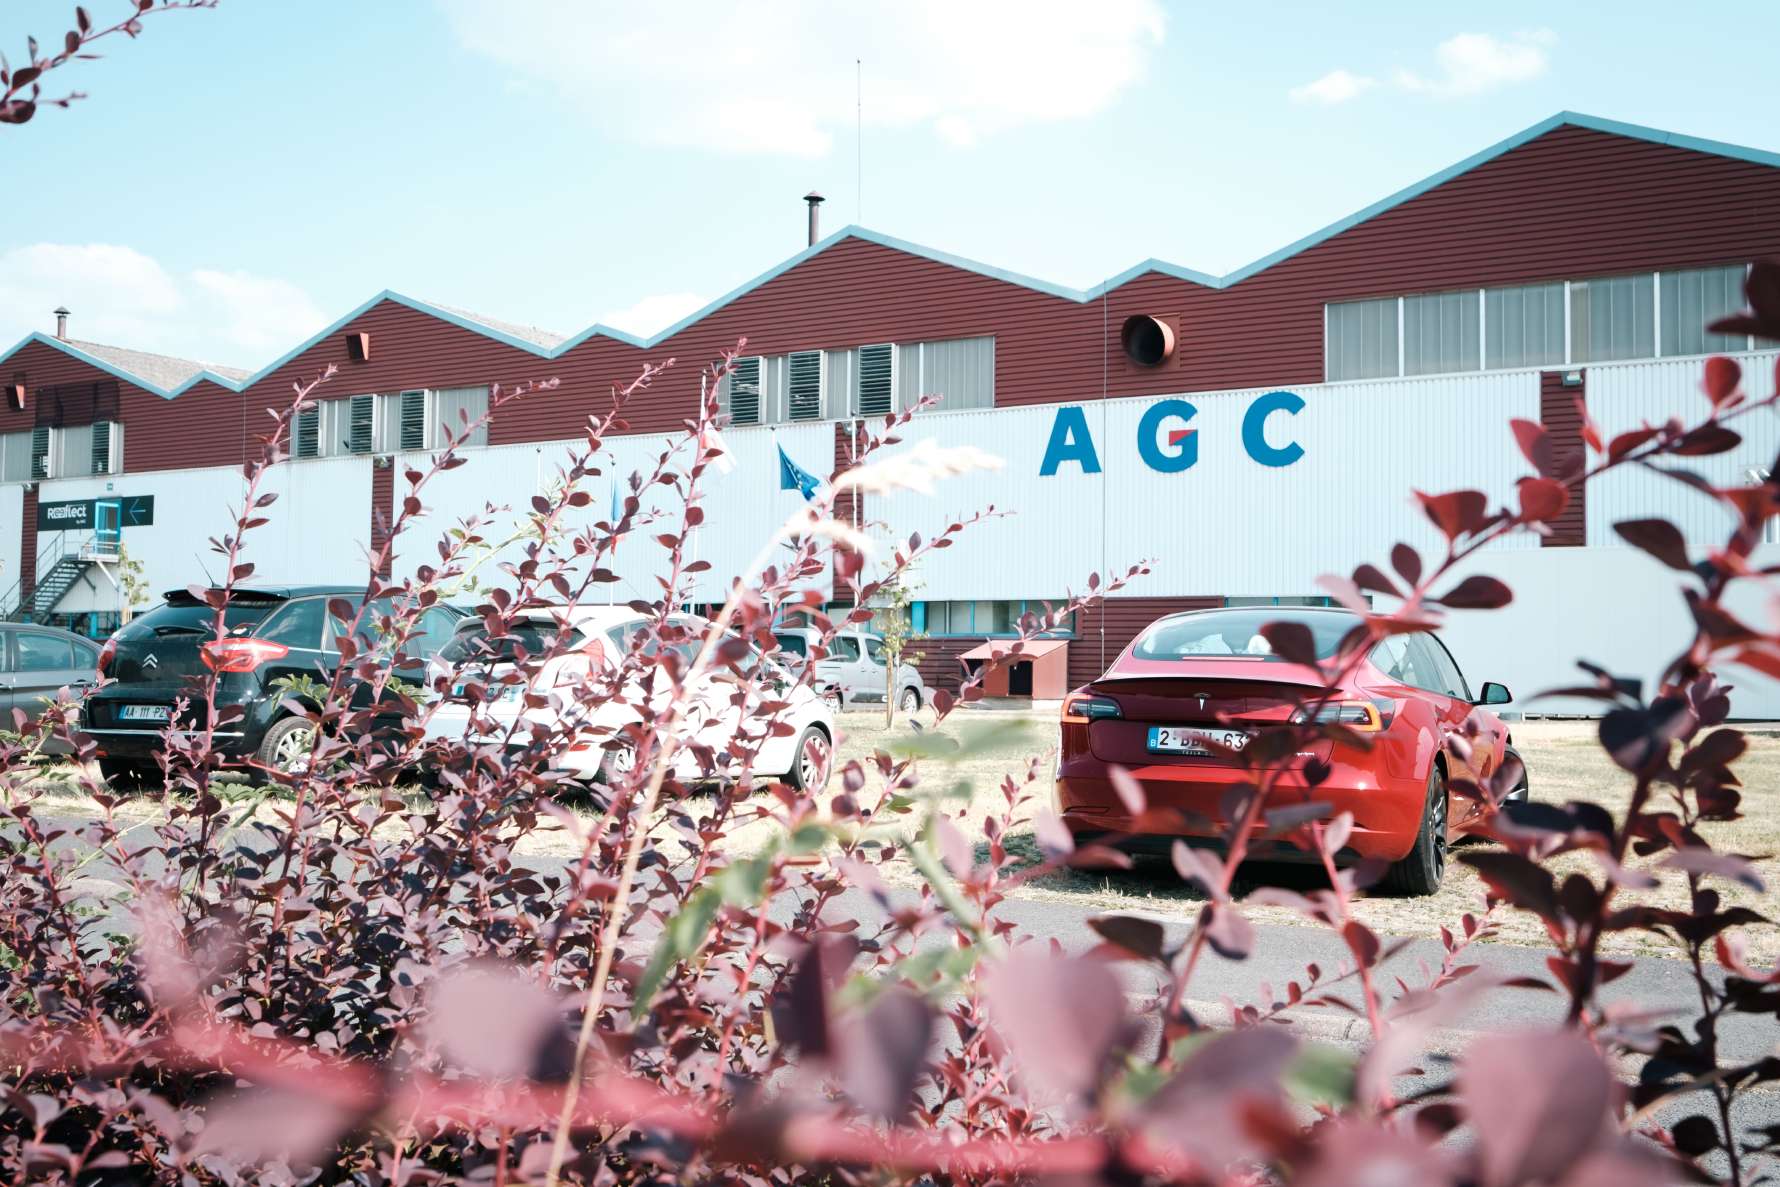 The AGC plant